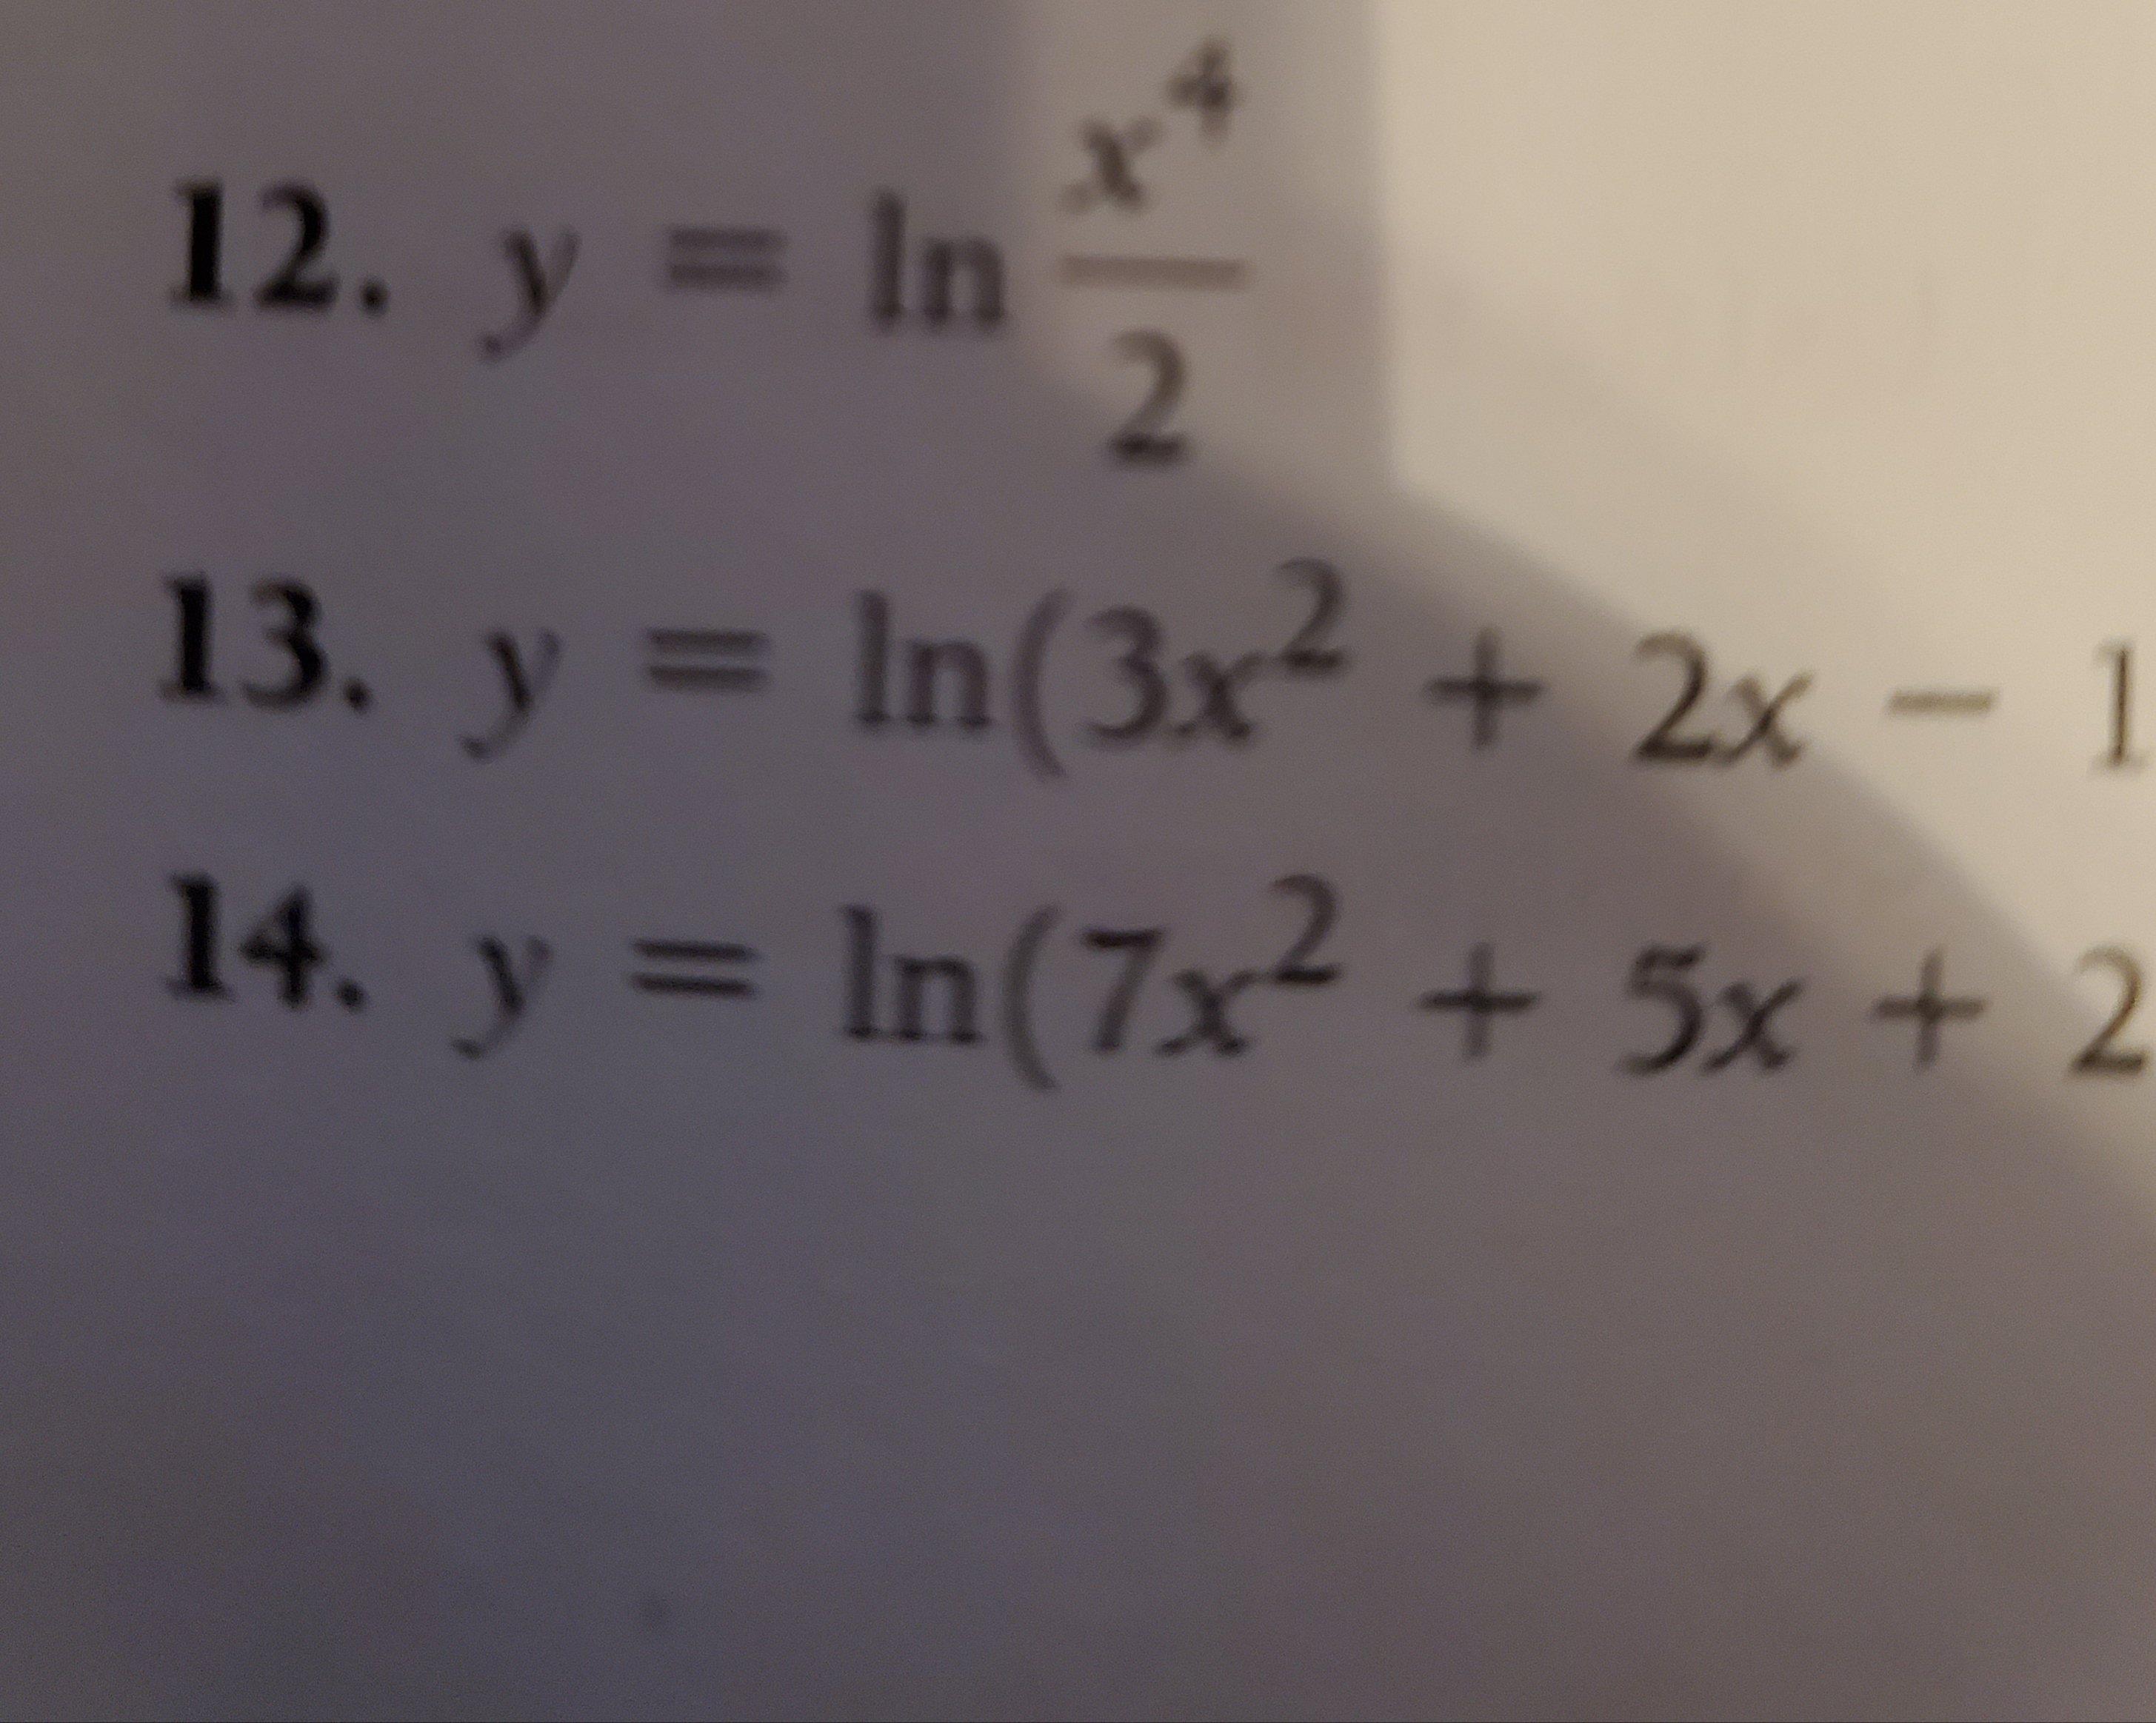 12. y = In
+y
2
13. y In(3x2 + 2x- 1
14. y In(7x +5x+ 2
2
